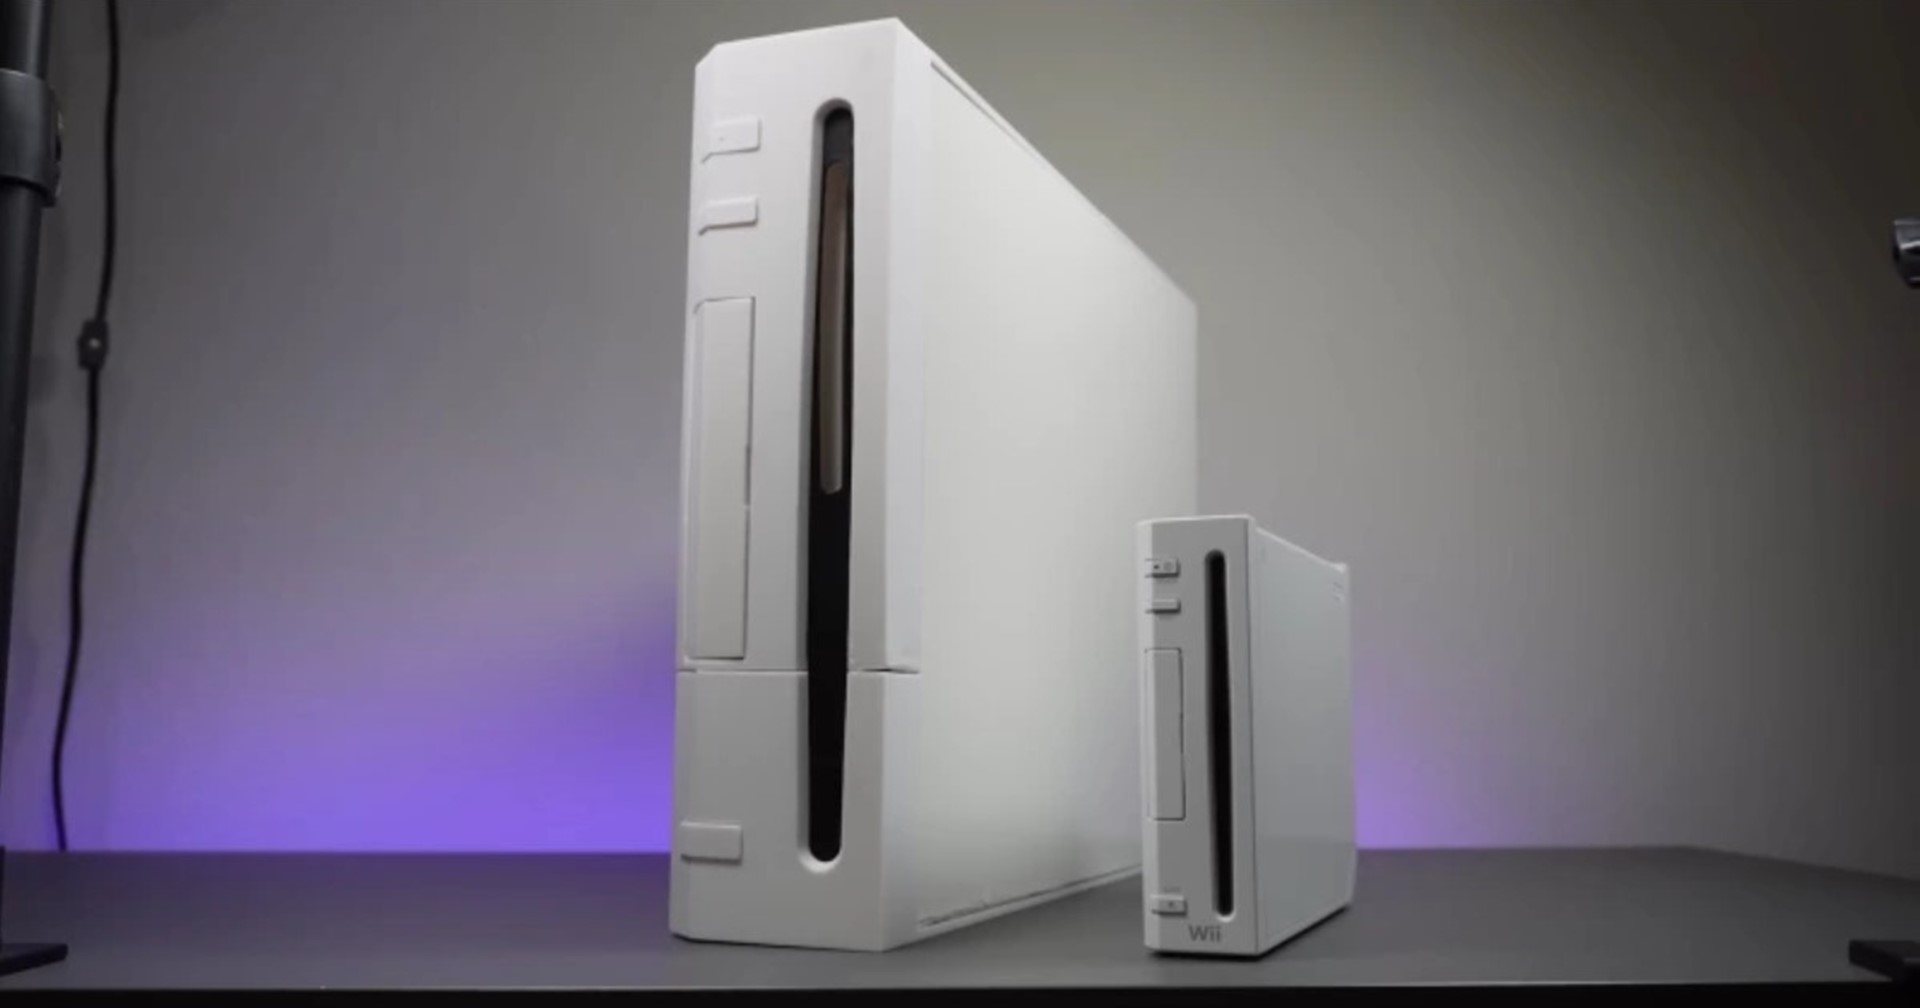 แฟนเกมสร้างเครื่อง Wii XL ที่ใหญ่กว่าเดิม 12 เท่า แถมใช้งานได้จริง